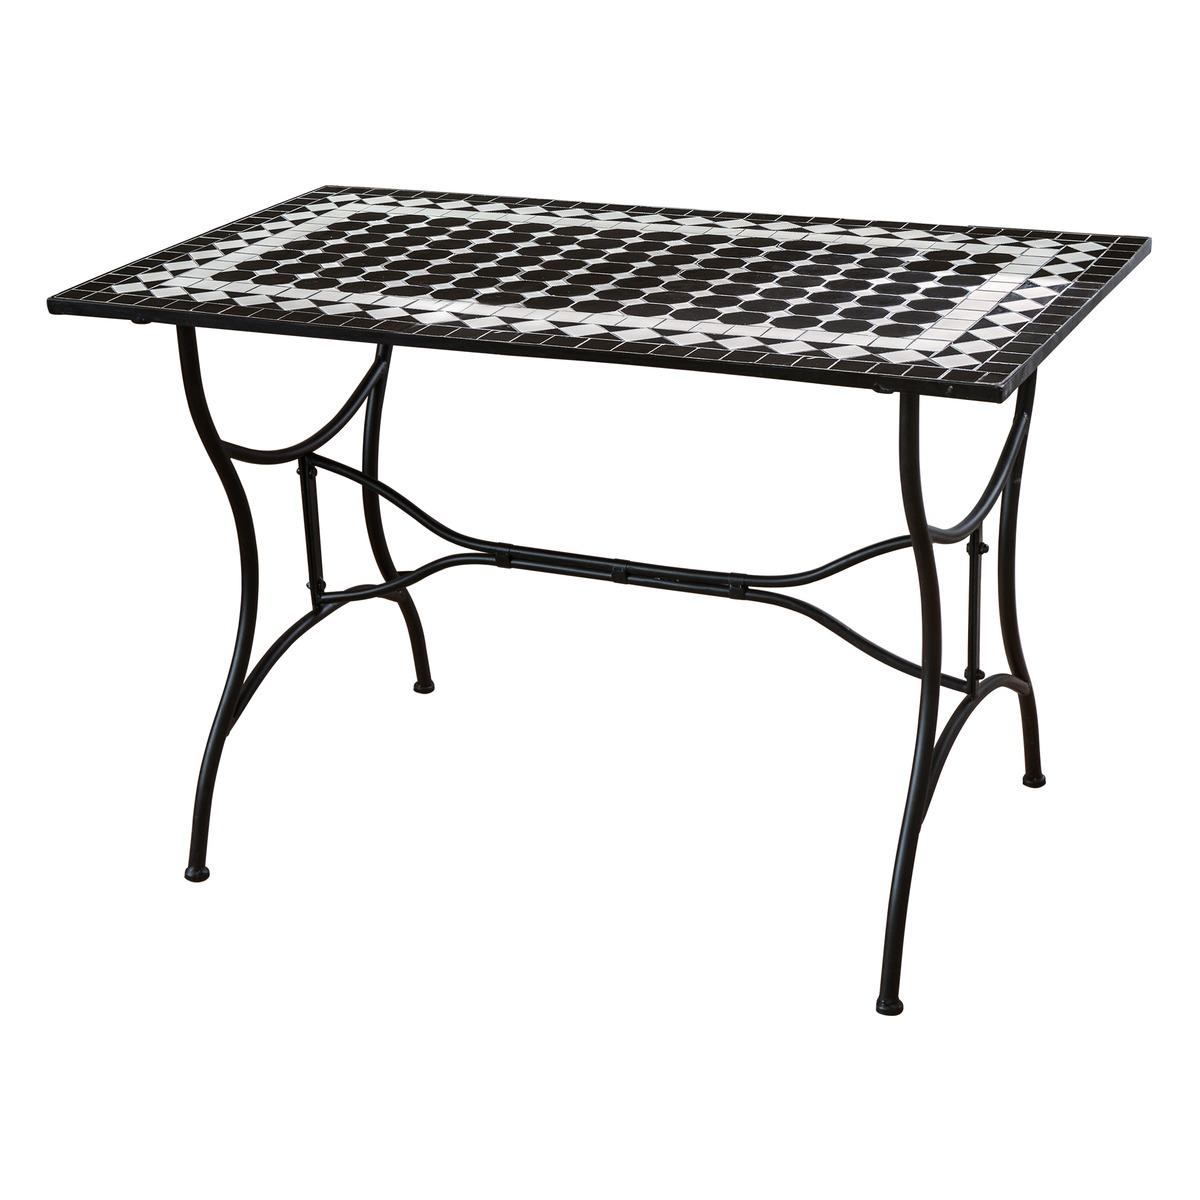 Table rectangulaire Fès en acier décor mosaïque - 120 x 70 x H 72 cm - Blanc, noir